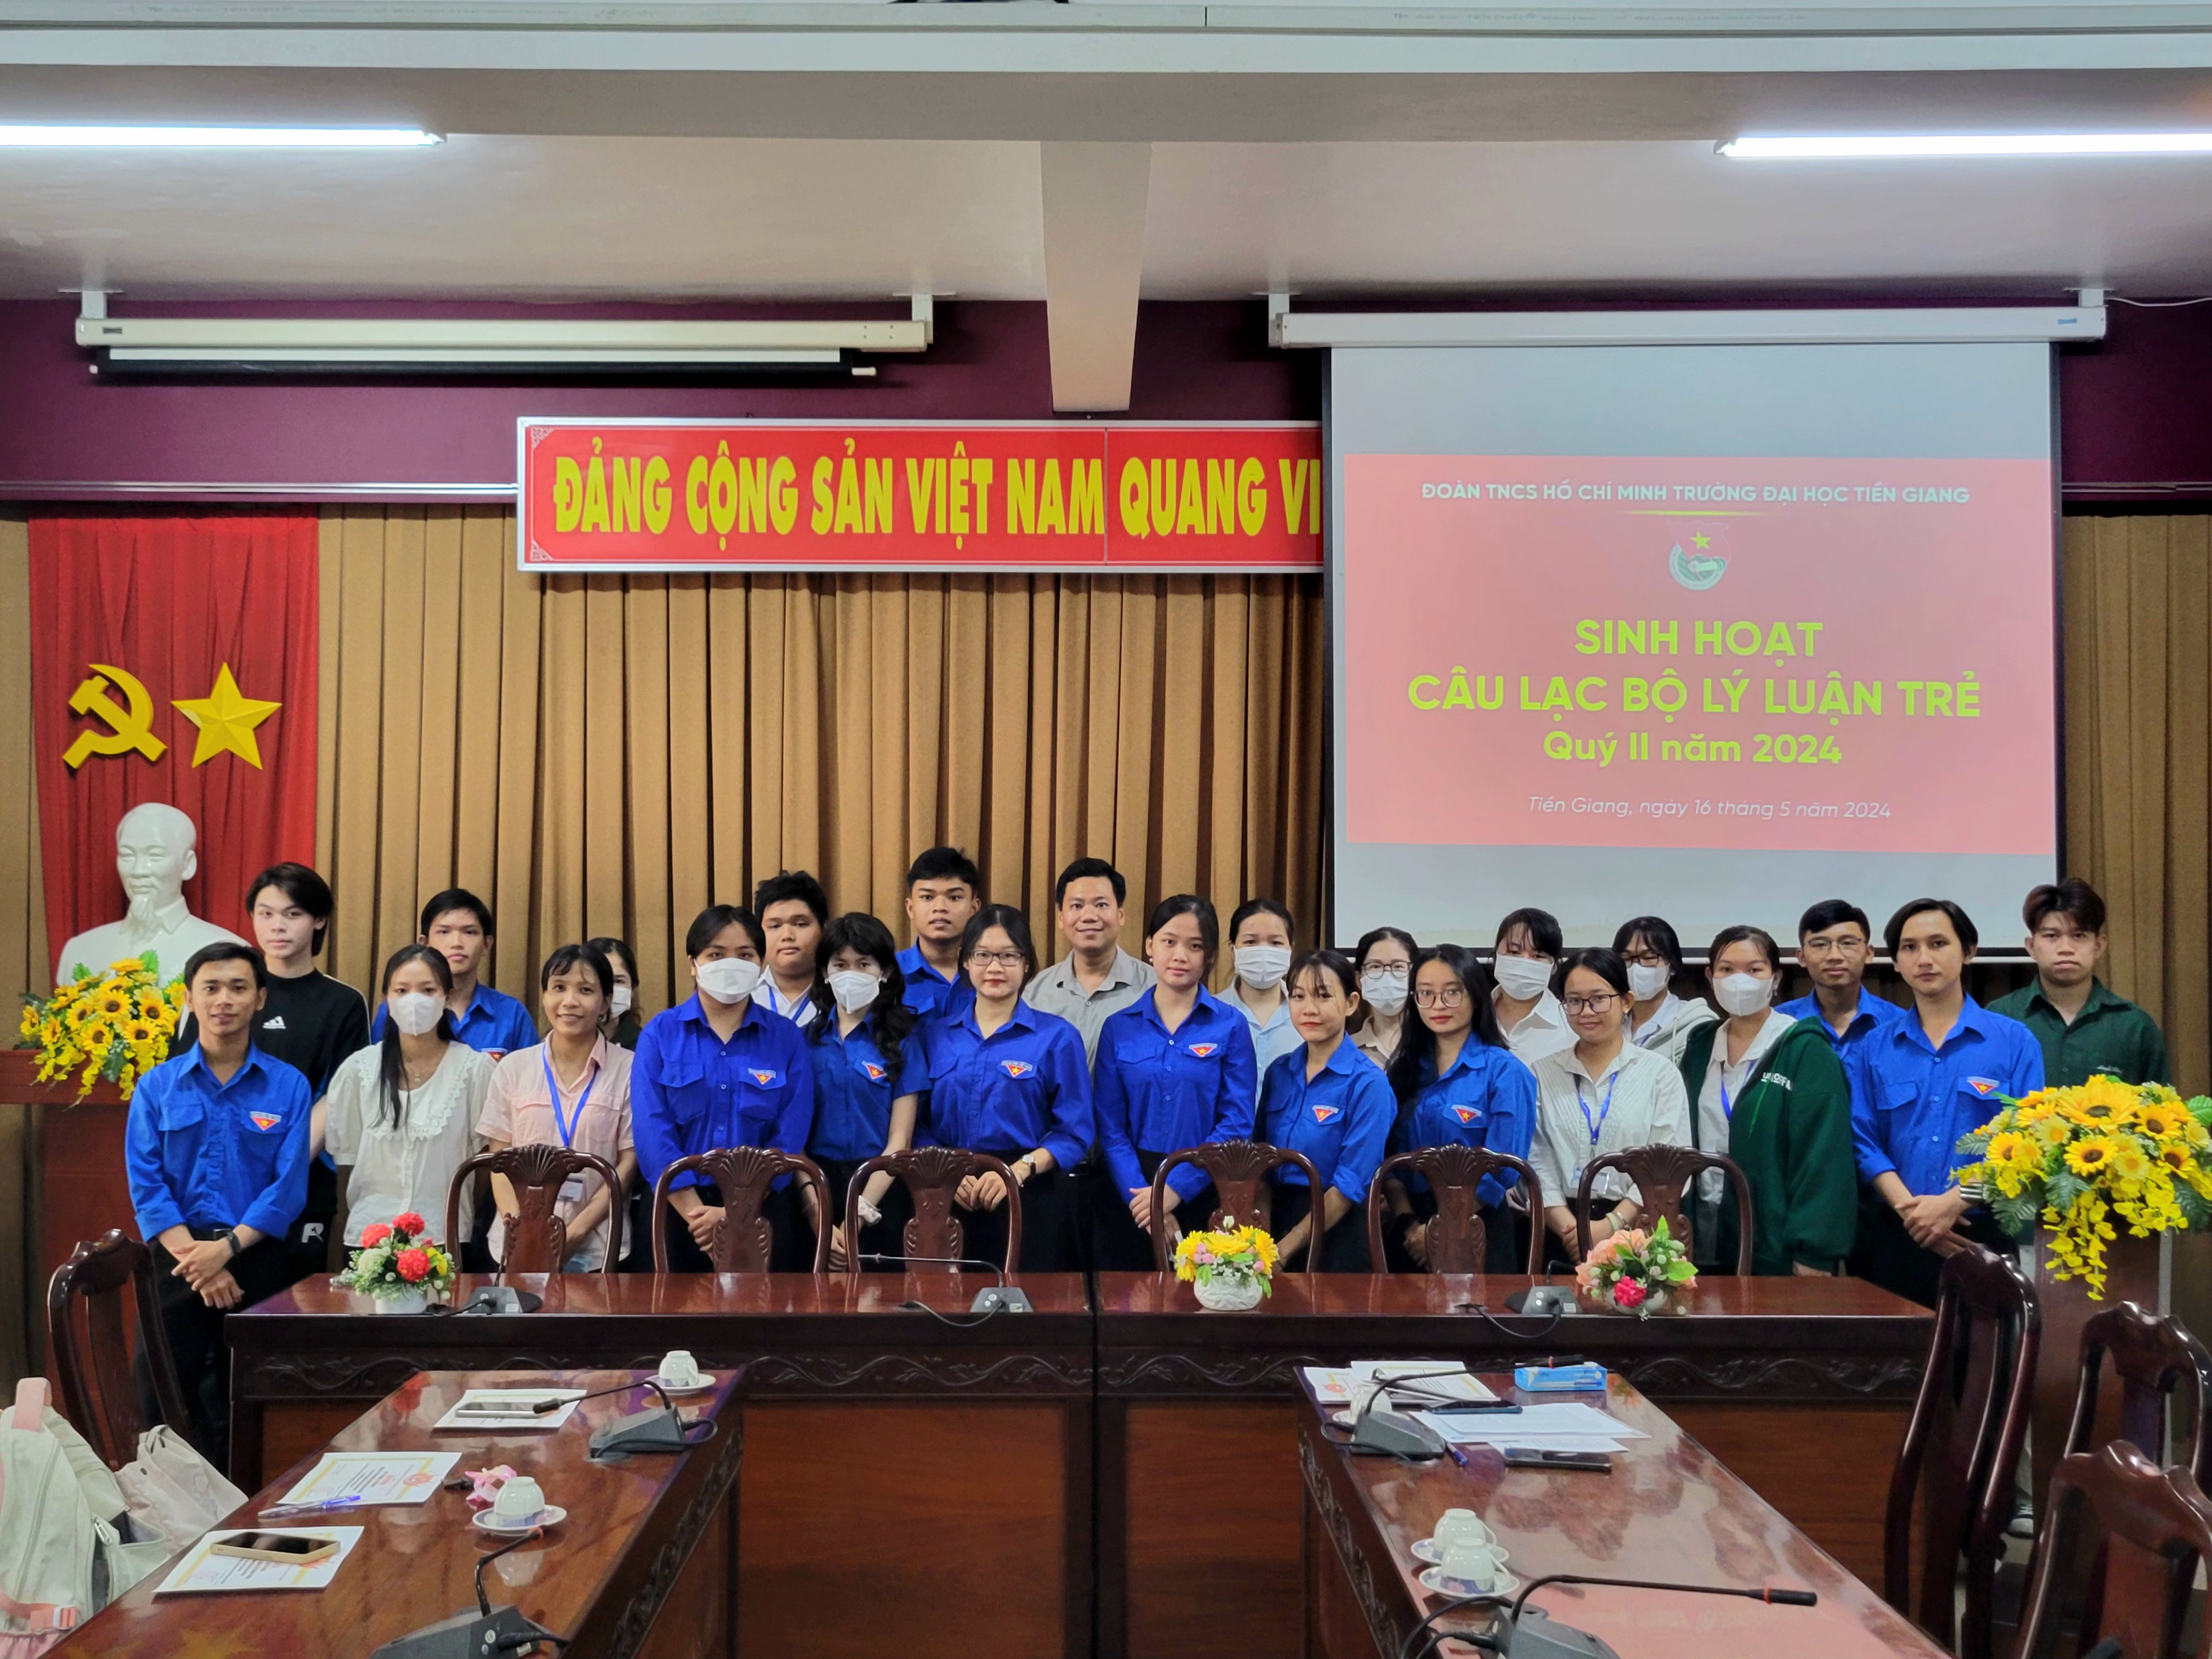 Sinh hoạt Câu lạc bộ Lý luận trẻ Trường Đại học Tiền Giang, Quý II năm 2024